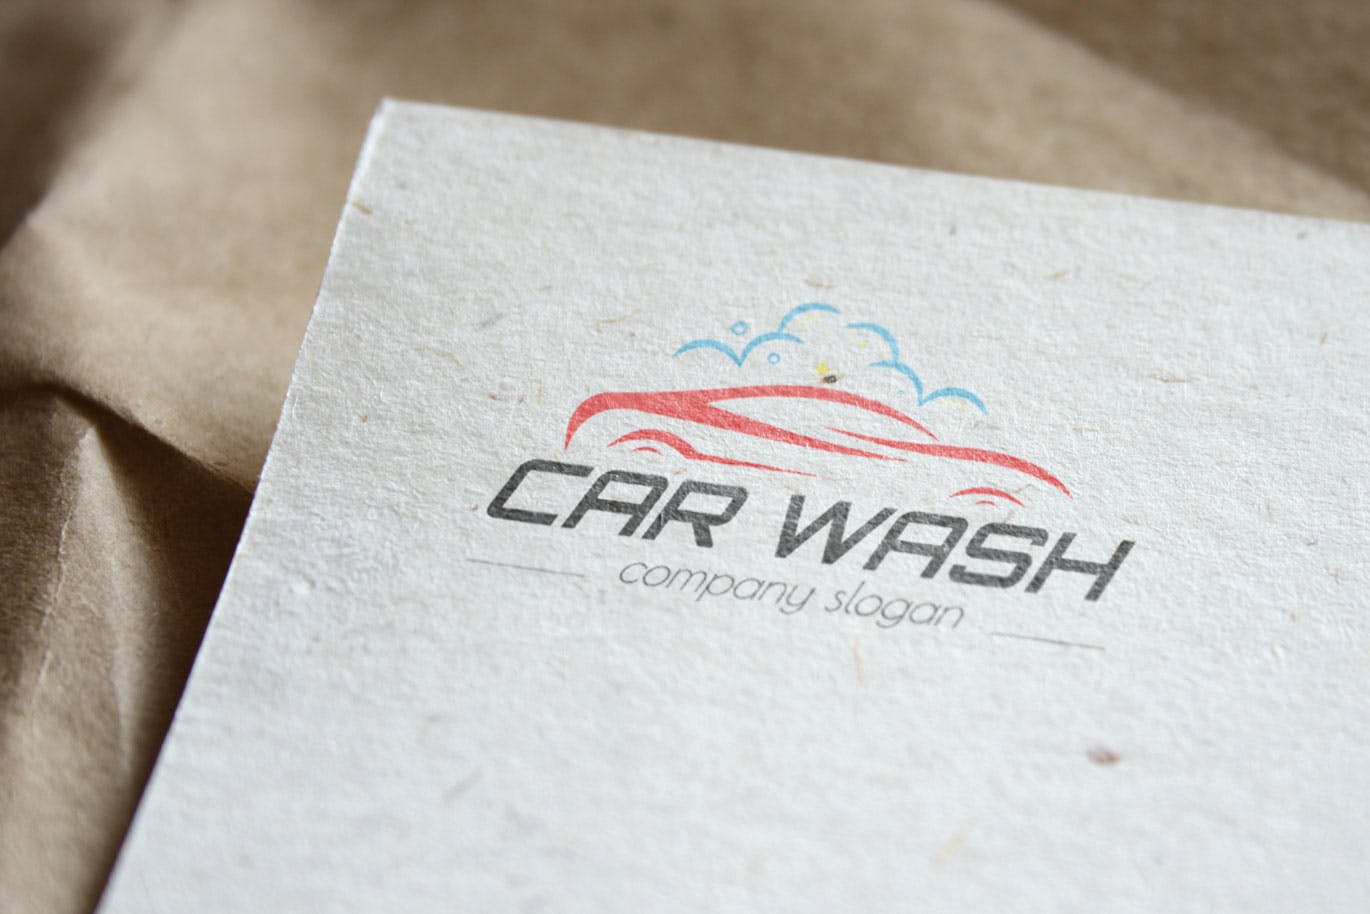 洗车店品牌Logo设计第一素材精选模板 Car Wash Business Logo Template插图(3)